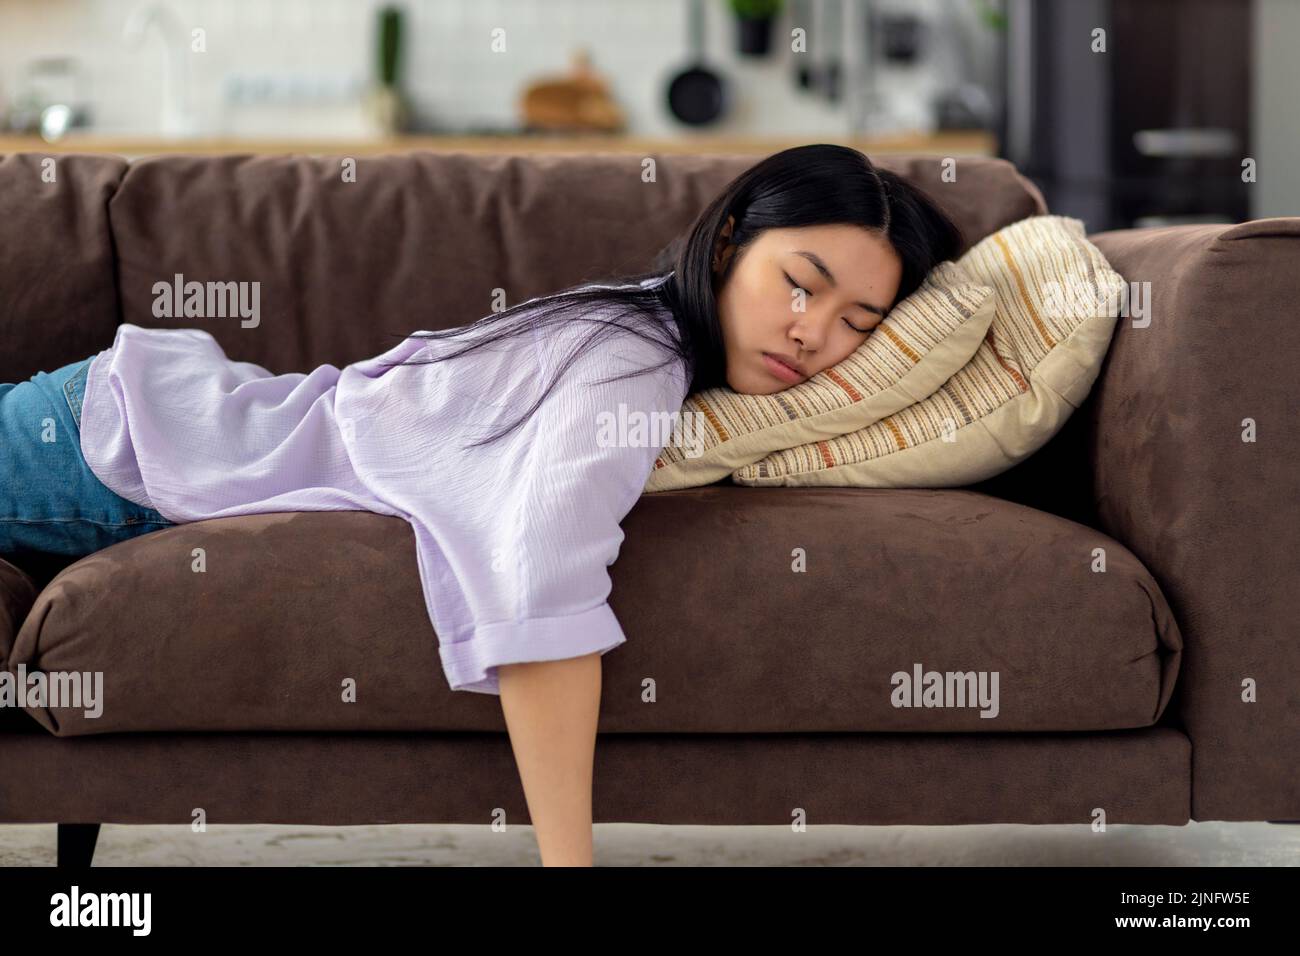 La mujer joven caucásica cansada se duerme en el sofá después de un duro día de trabajo concepto de fatiga Foto de stock